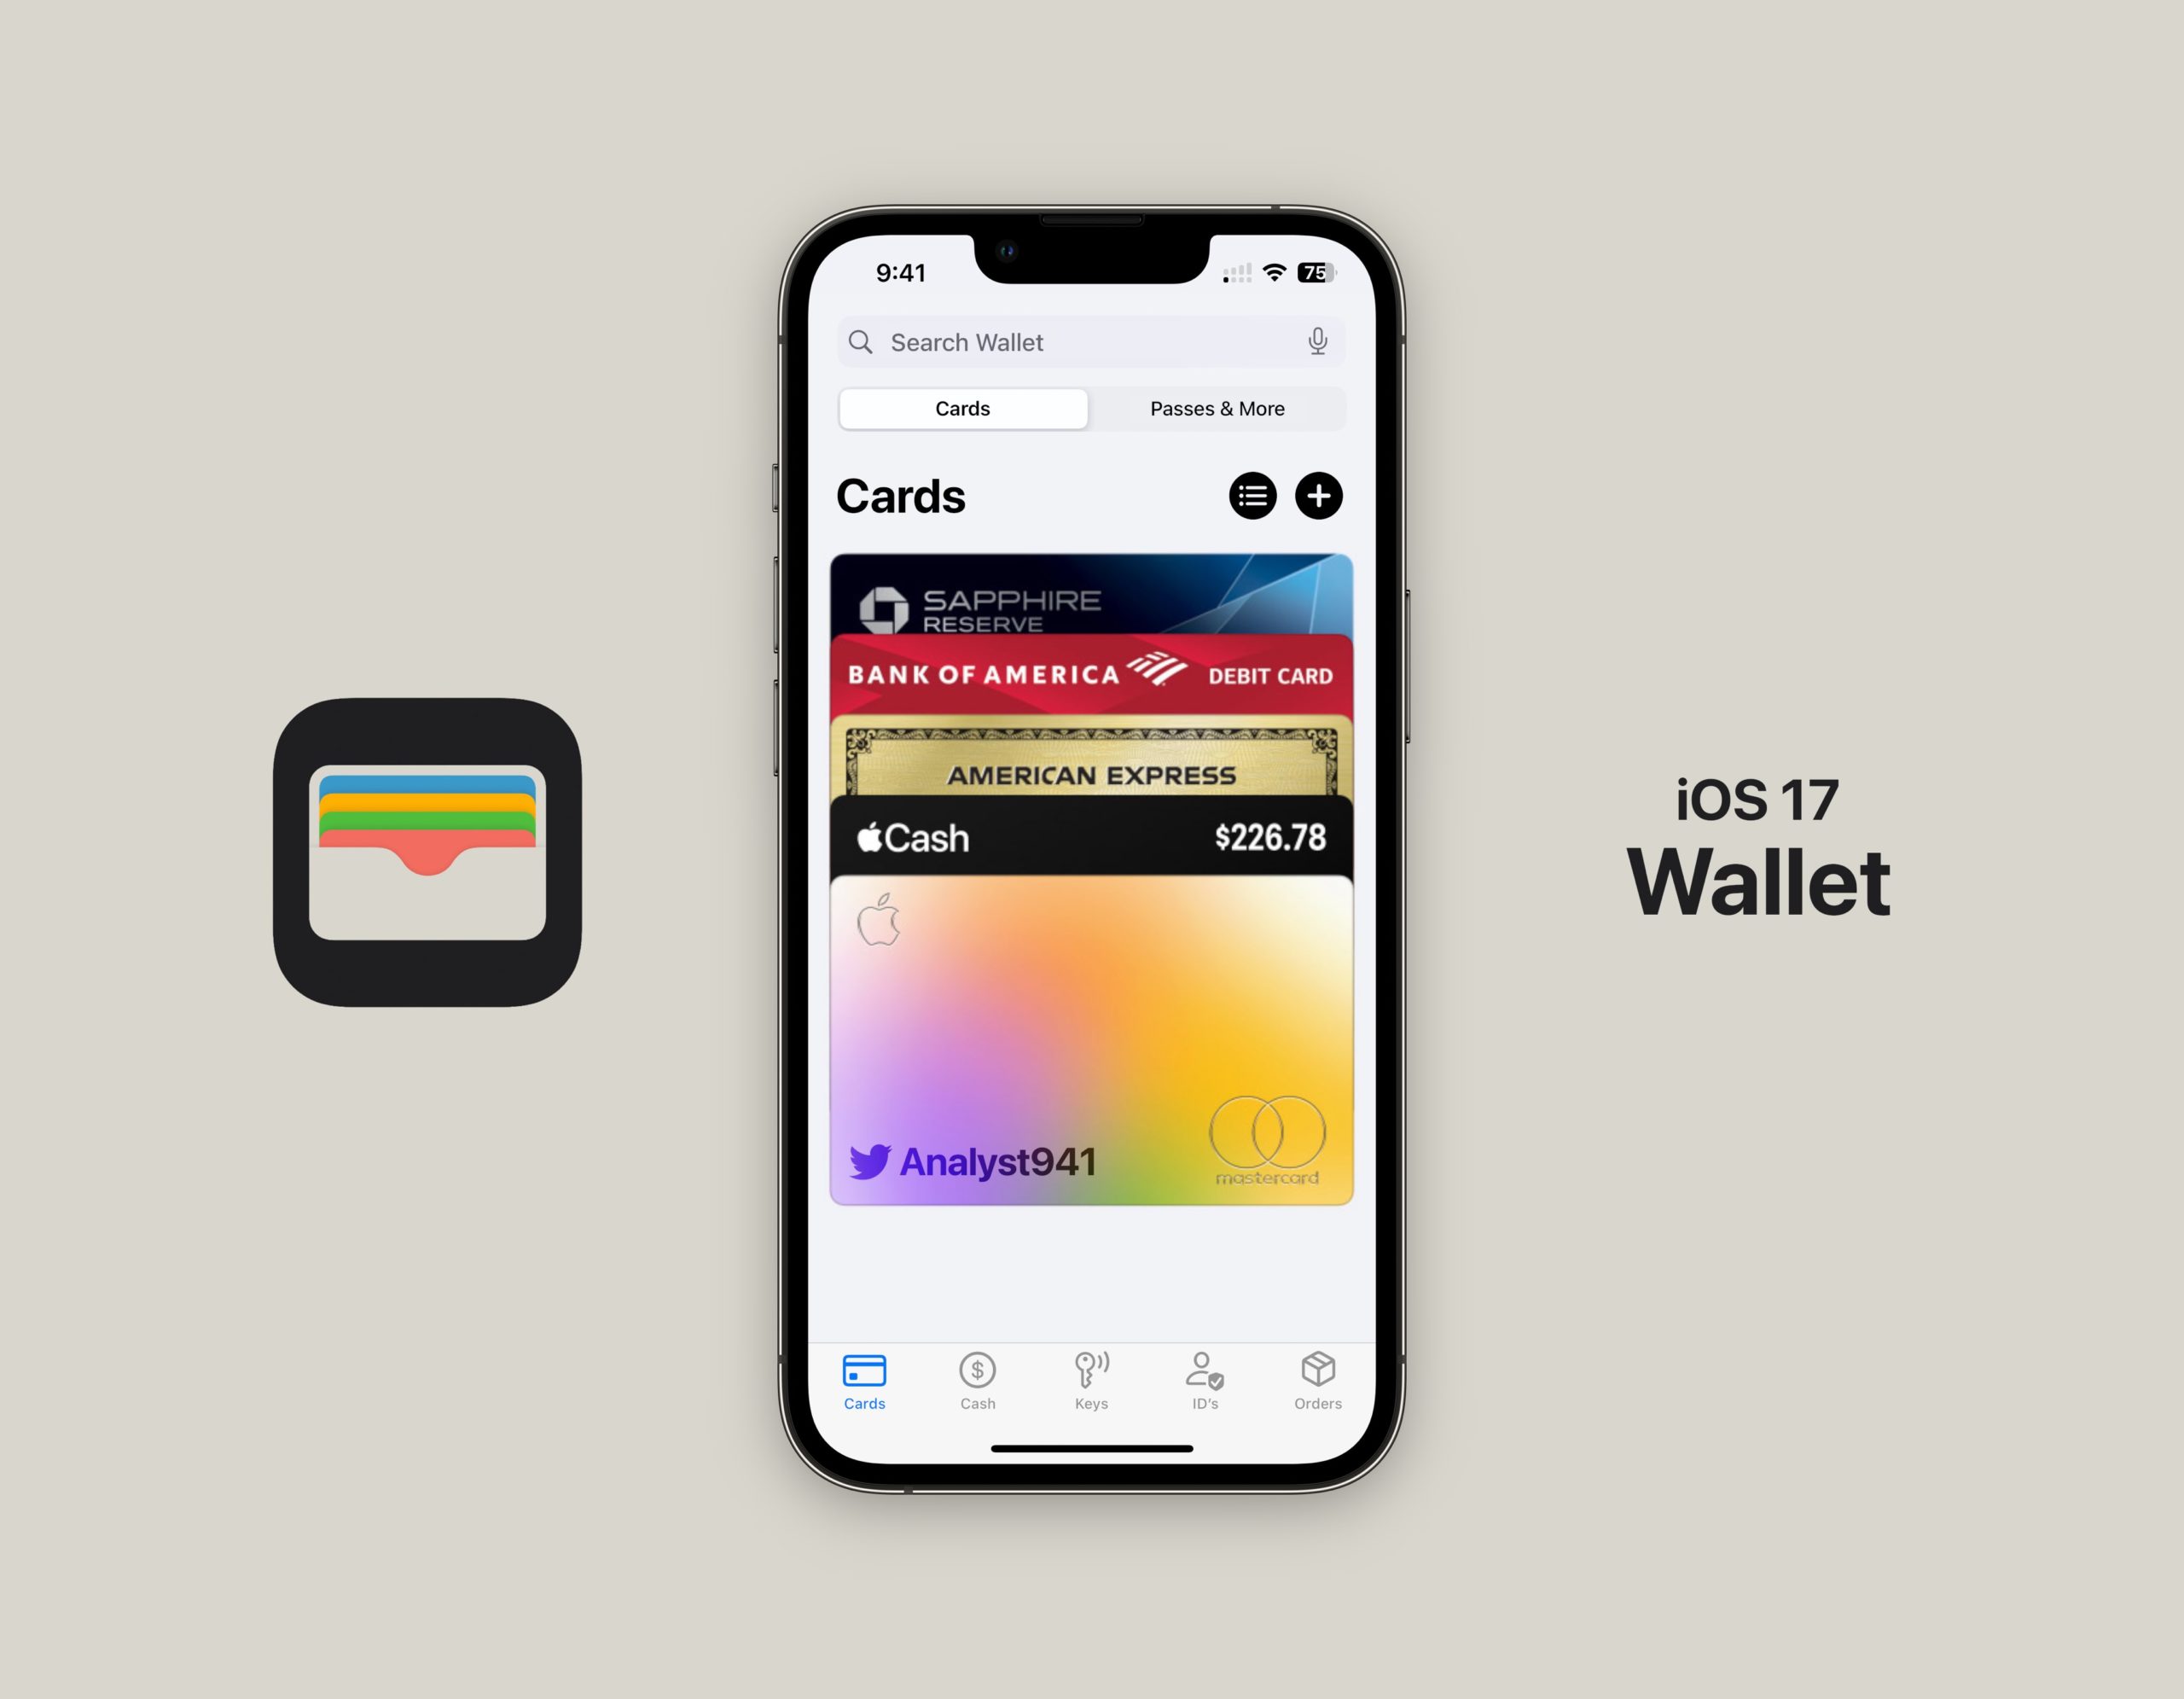 iOS 17 Wallet